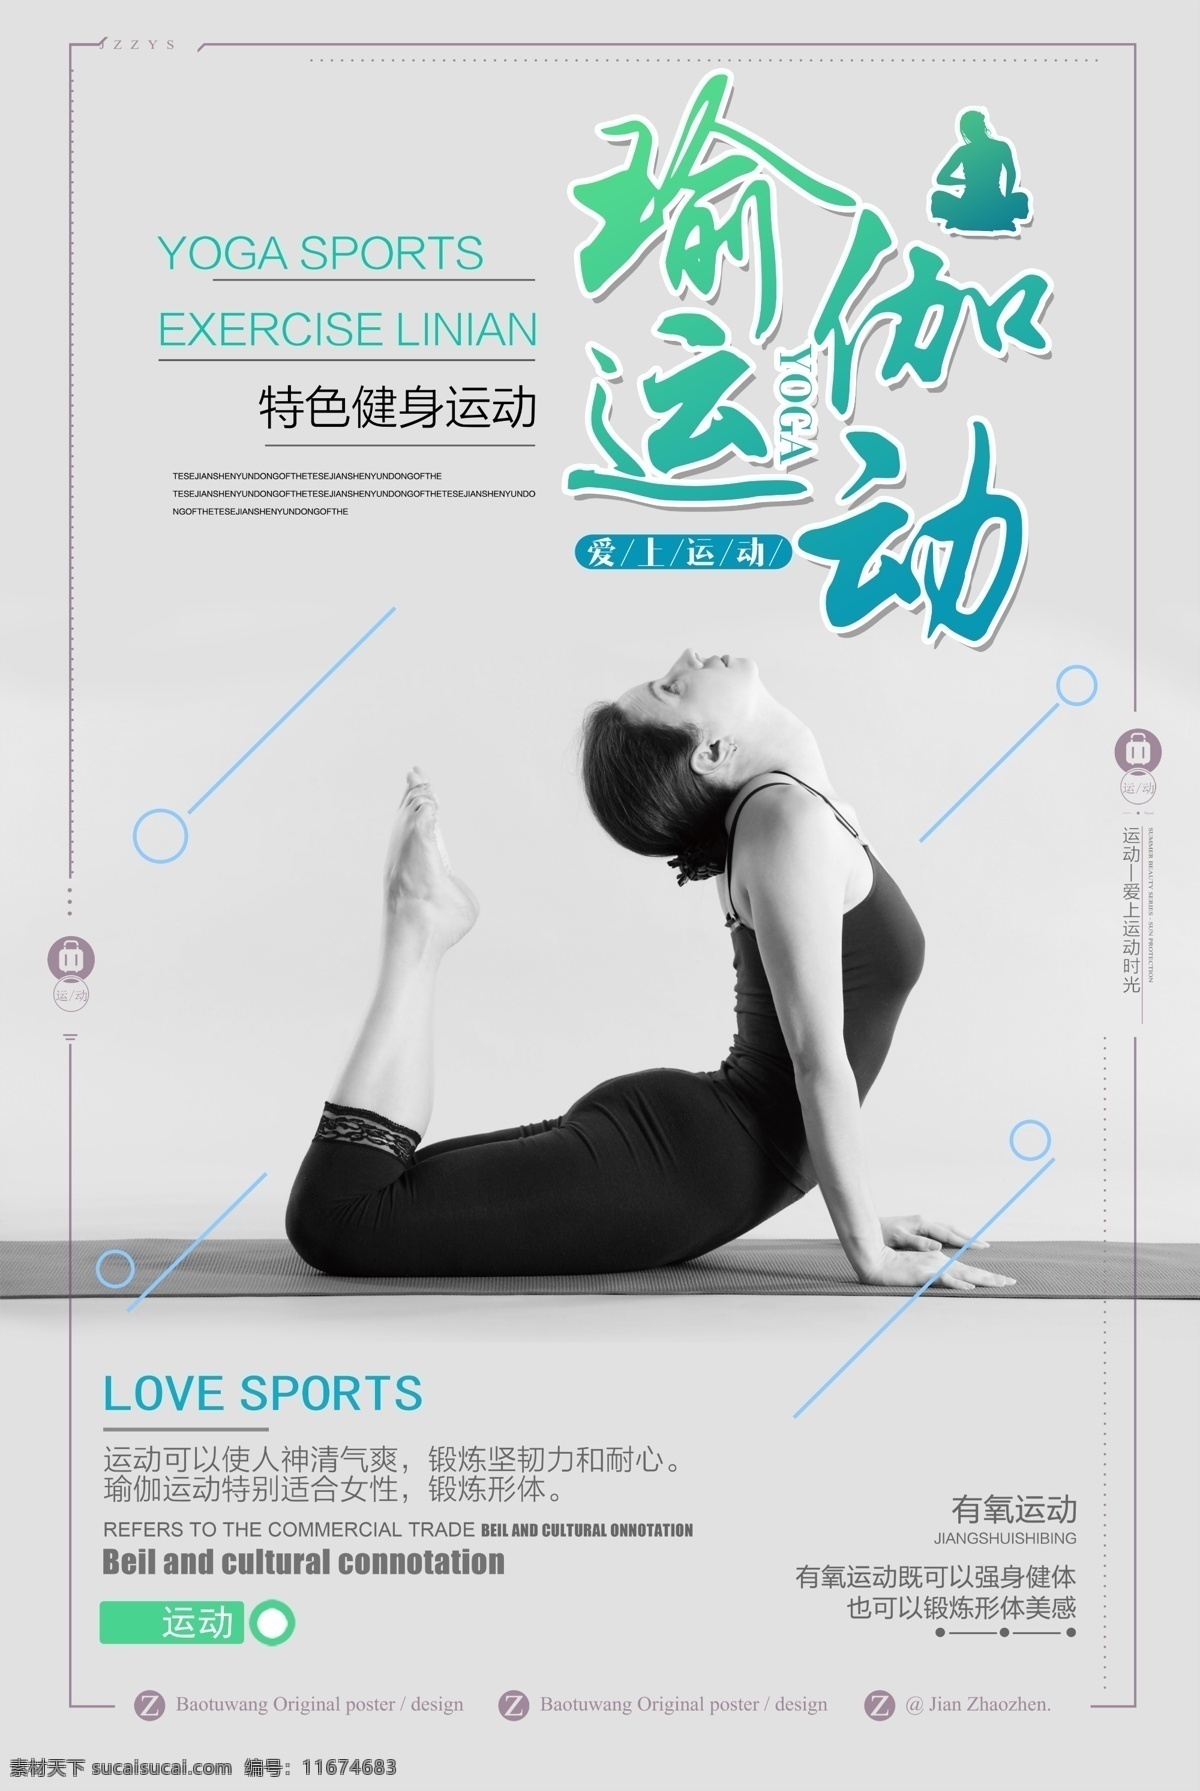 特色 健身 瑜伽 运动 宣传海报 女性 舞蹈 美容美体 广告 健身馆 知识 瑜伽造型 瑜伽彩页 瑜伽班 瑜伽健身 健身瑜伽 健身宣传 瑜伽女孩 瑜伽图片 瑜伽少女